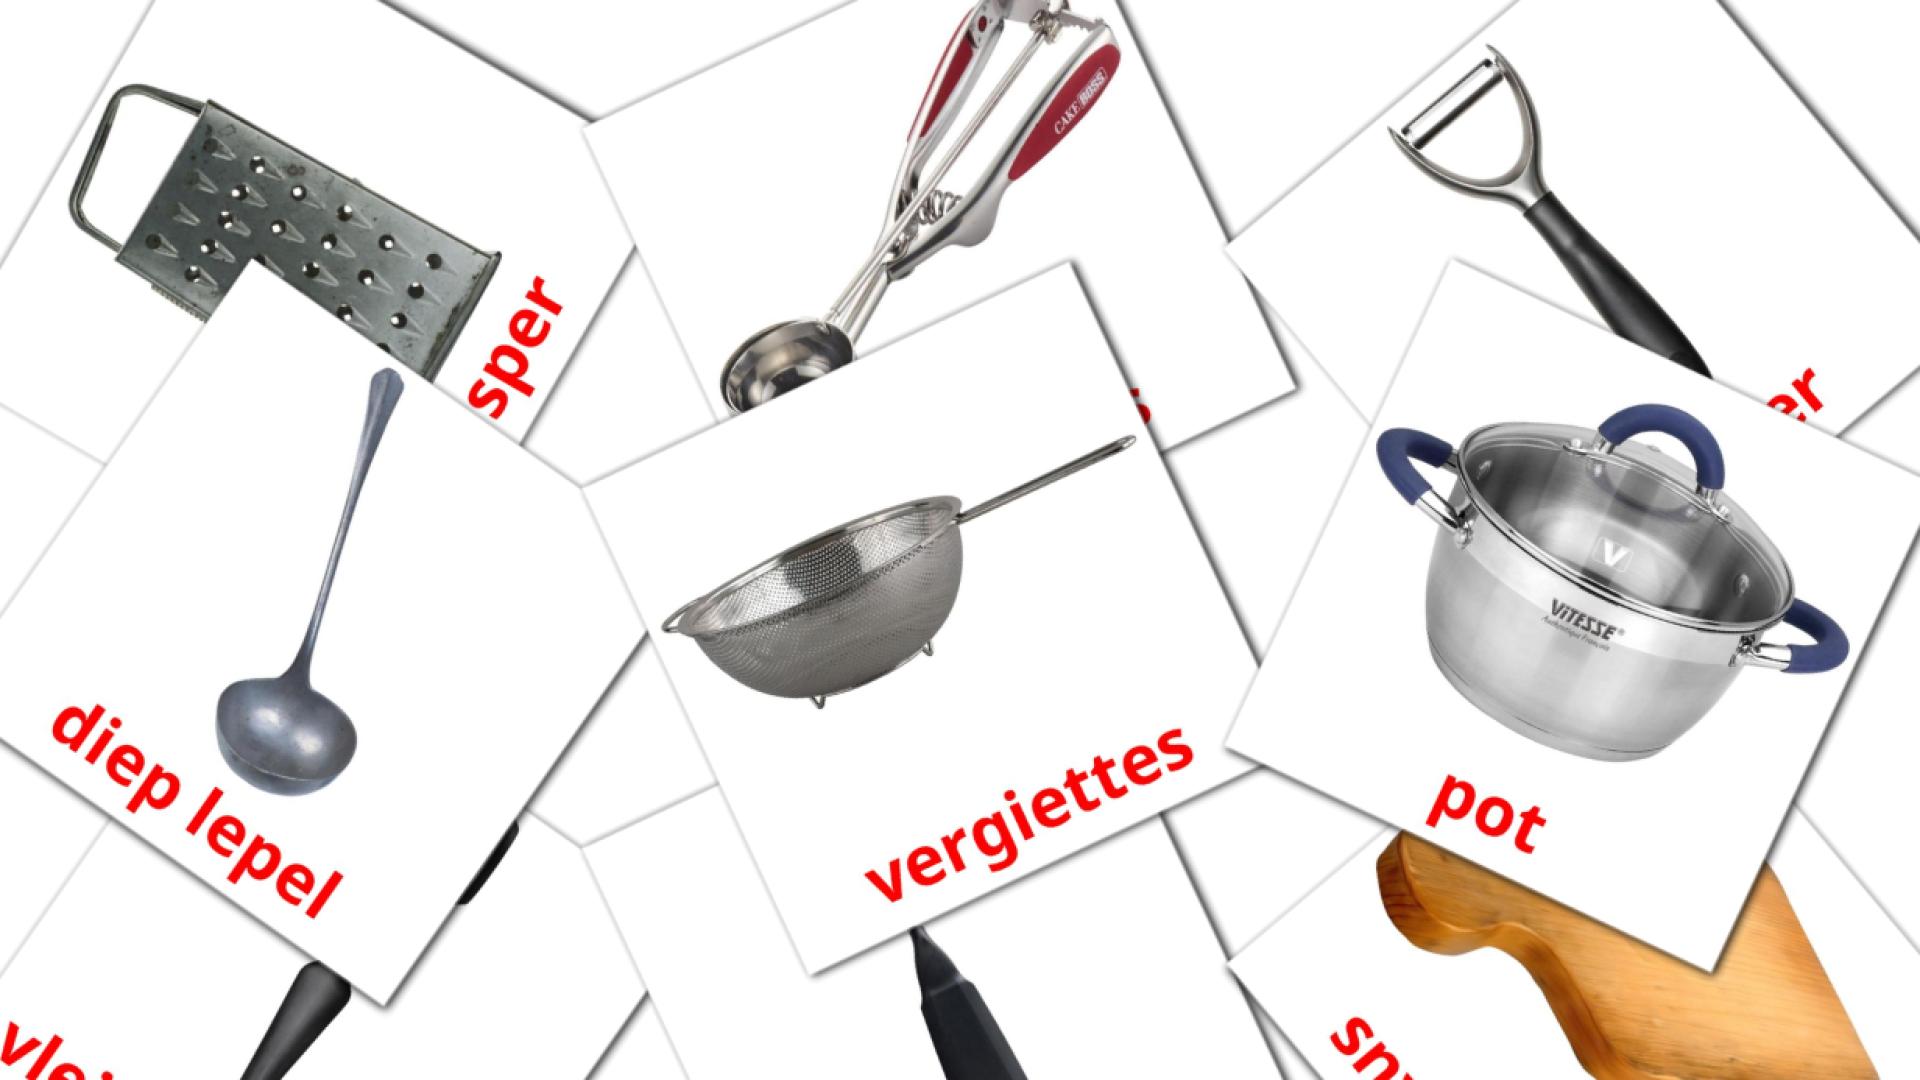 Küchenutensilien - Afrikaans Vokabelkarten